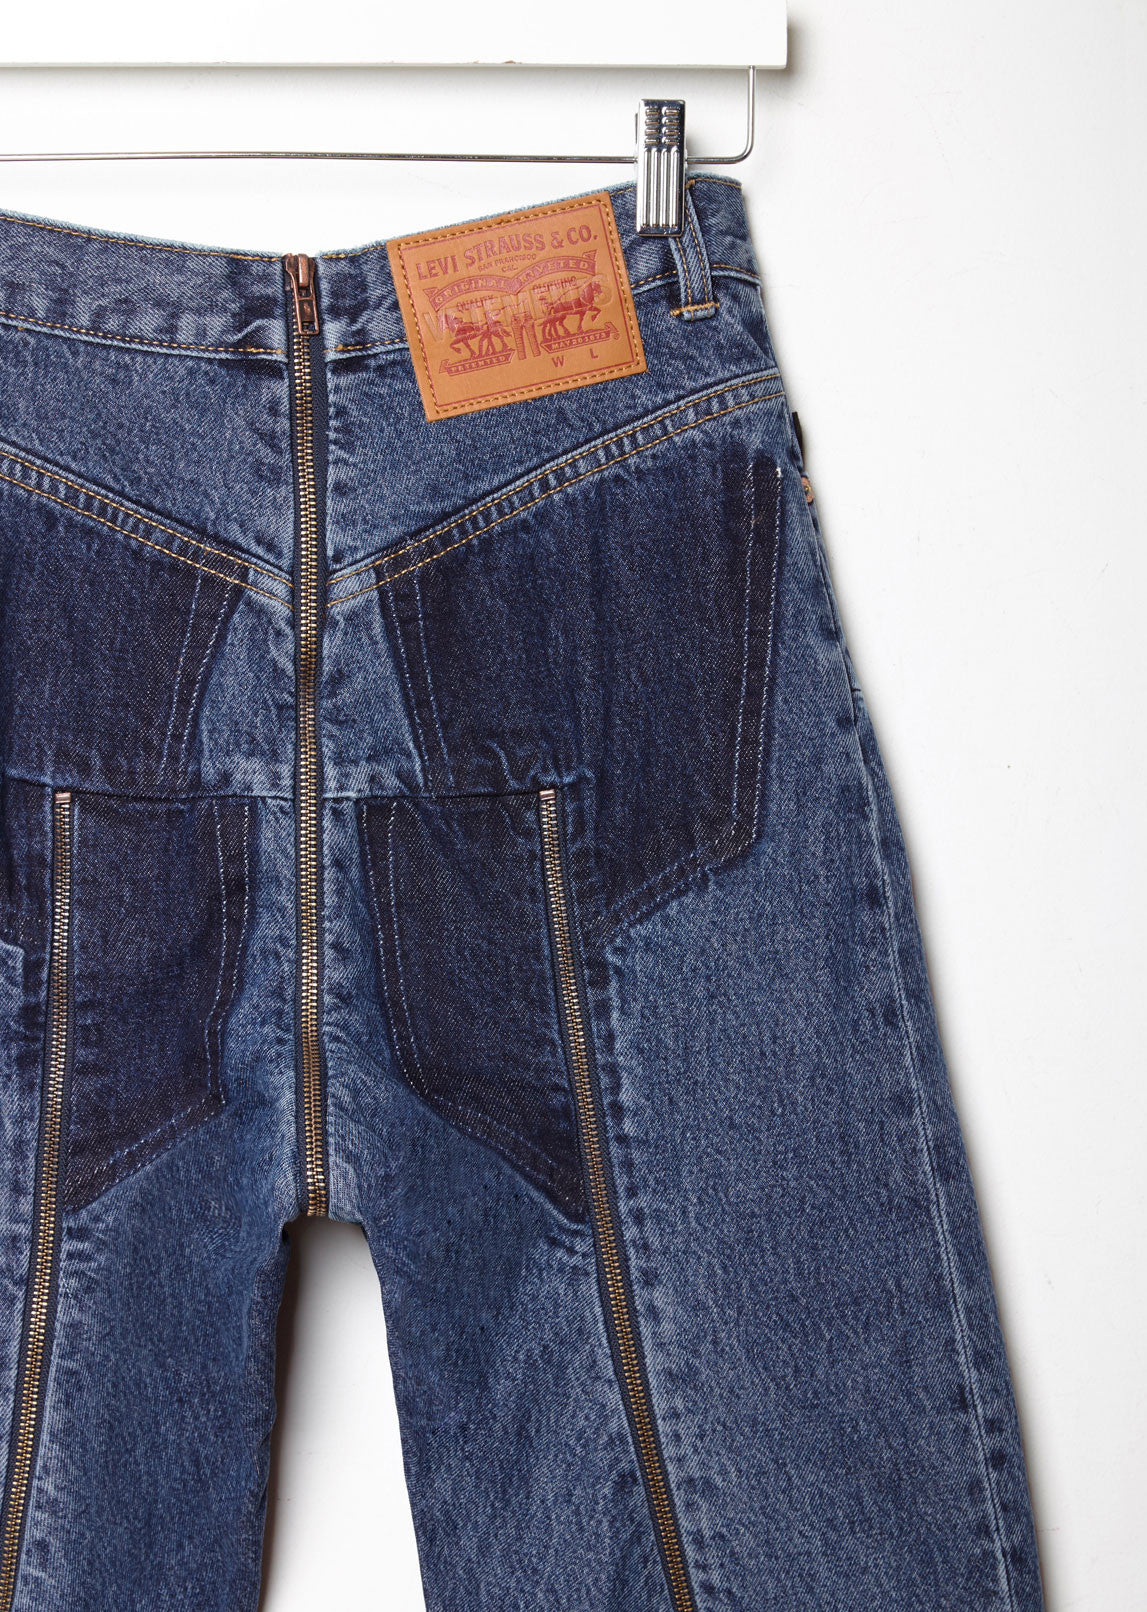 X Levi's Reworked Zip Jeans by Vetements - La Garçonne